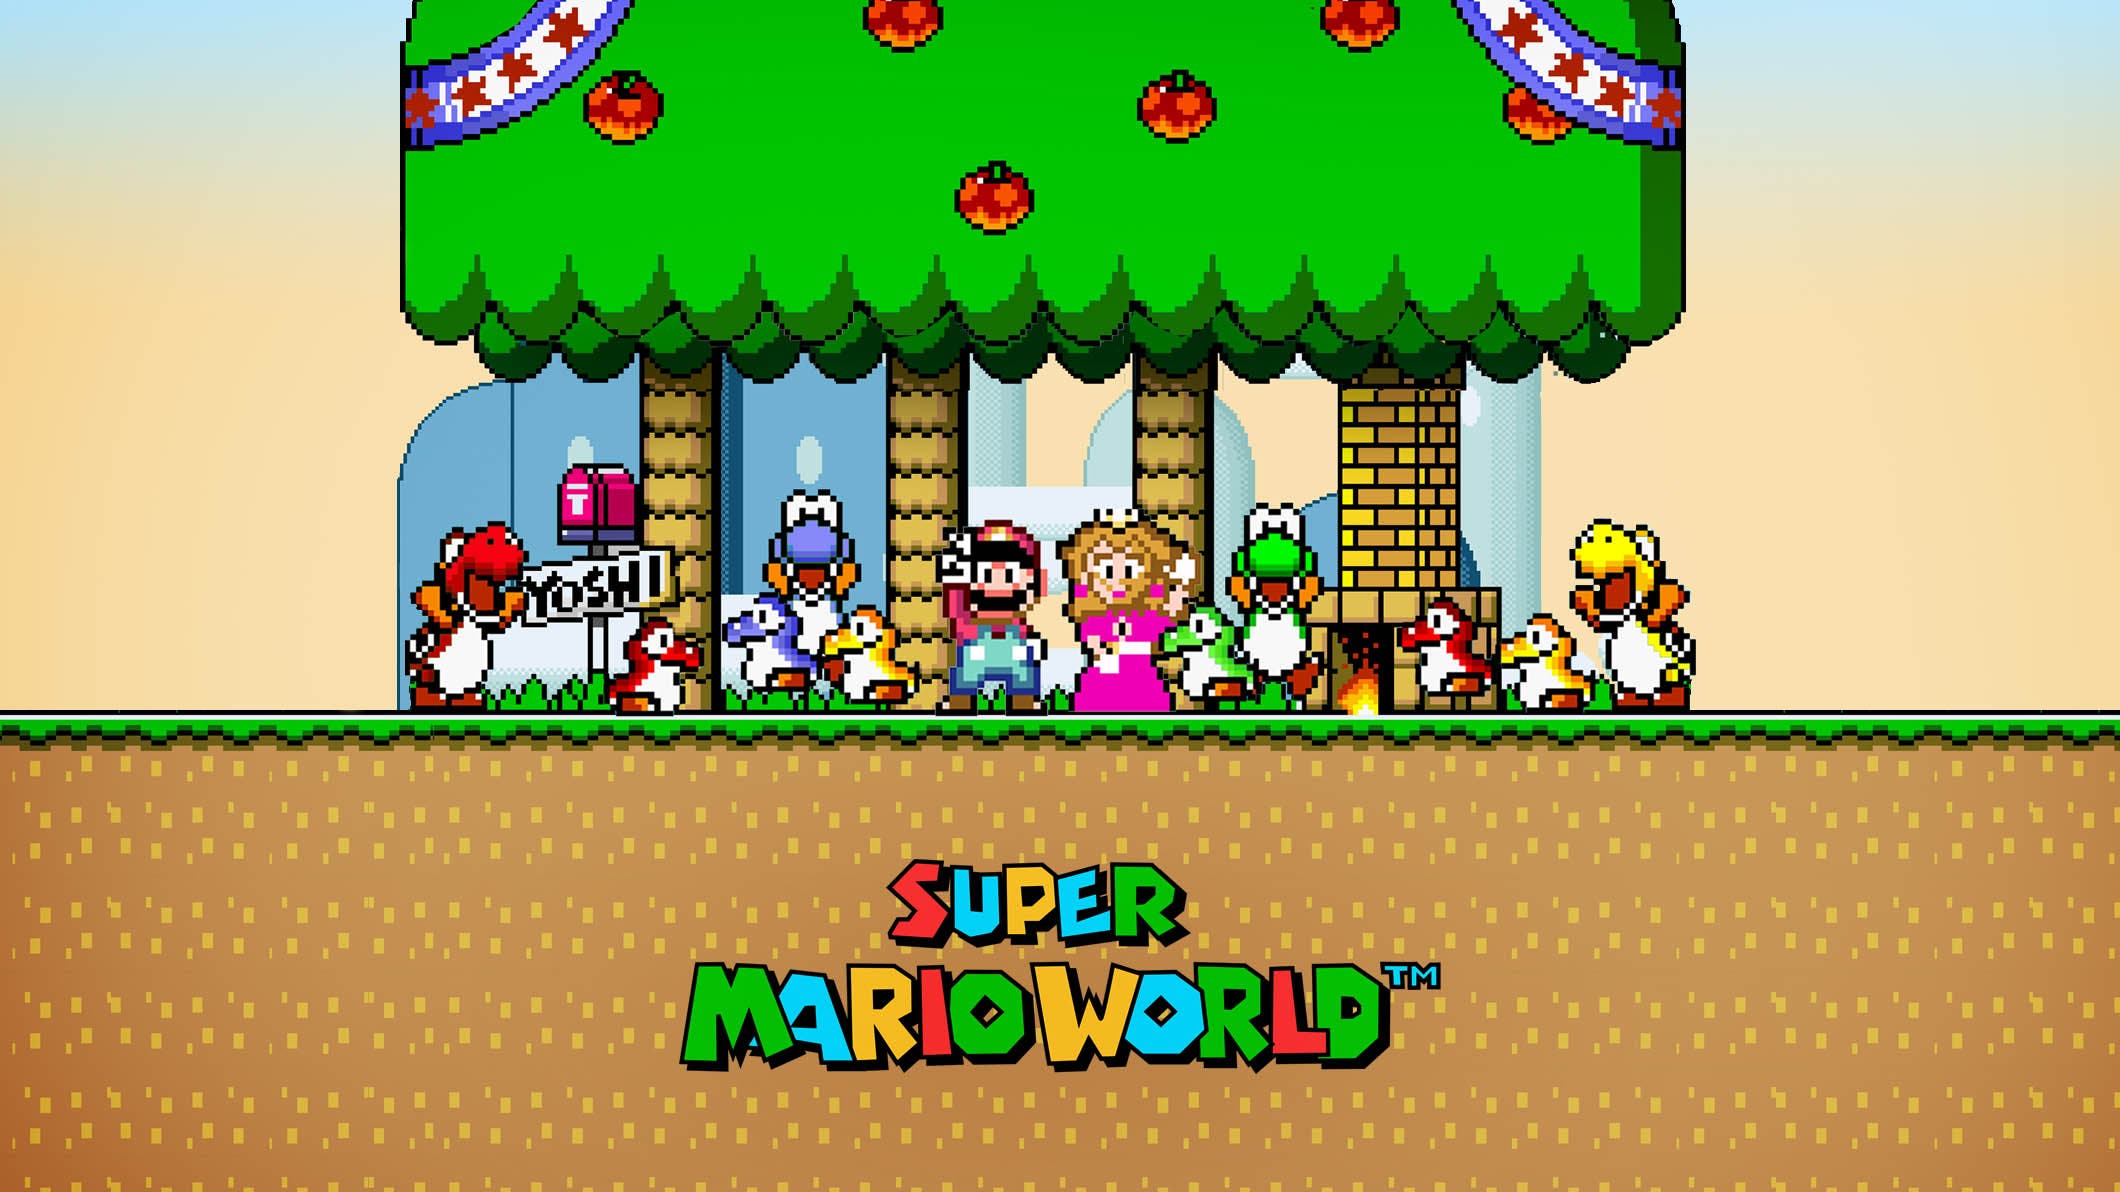 [Act.] Un proyecto de Kickstarter afirma tener los permisos de Nintendo para recrear los prototipos de Super Mario World